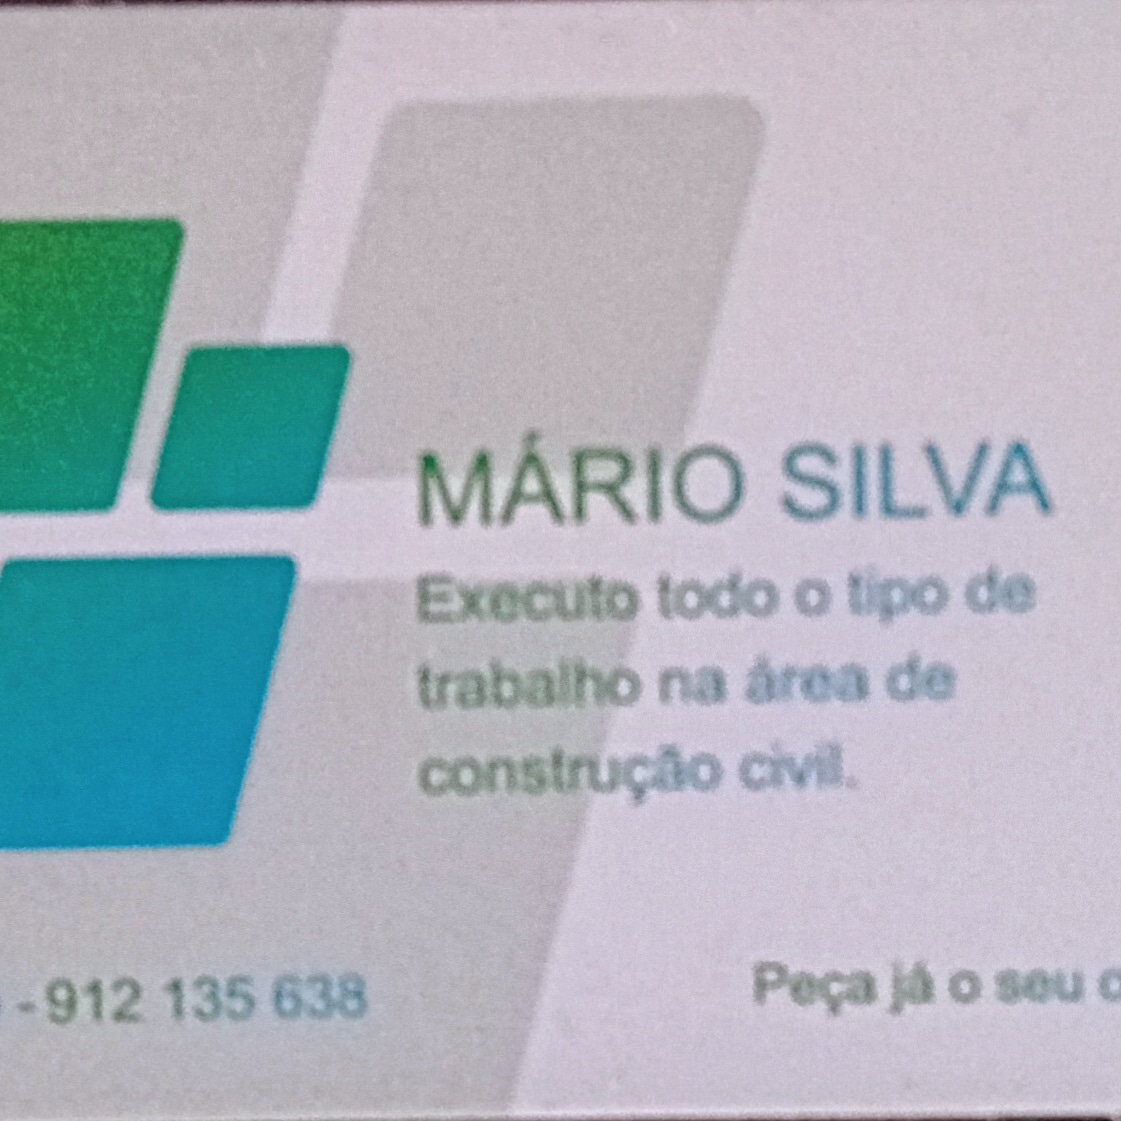 Mario Silva - Matosinhos - Remodelação de Cozinhas